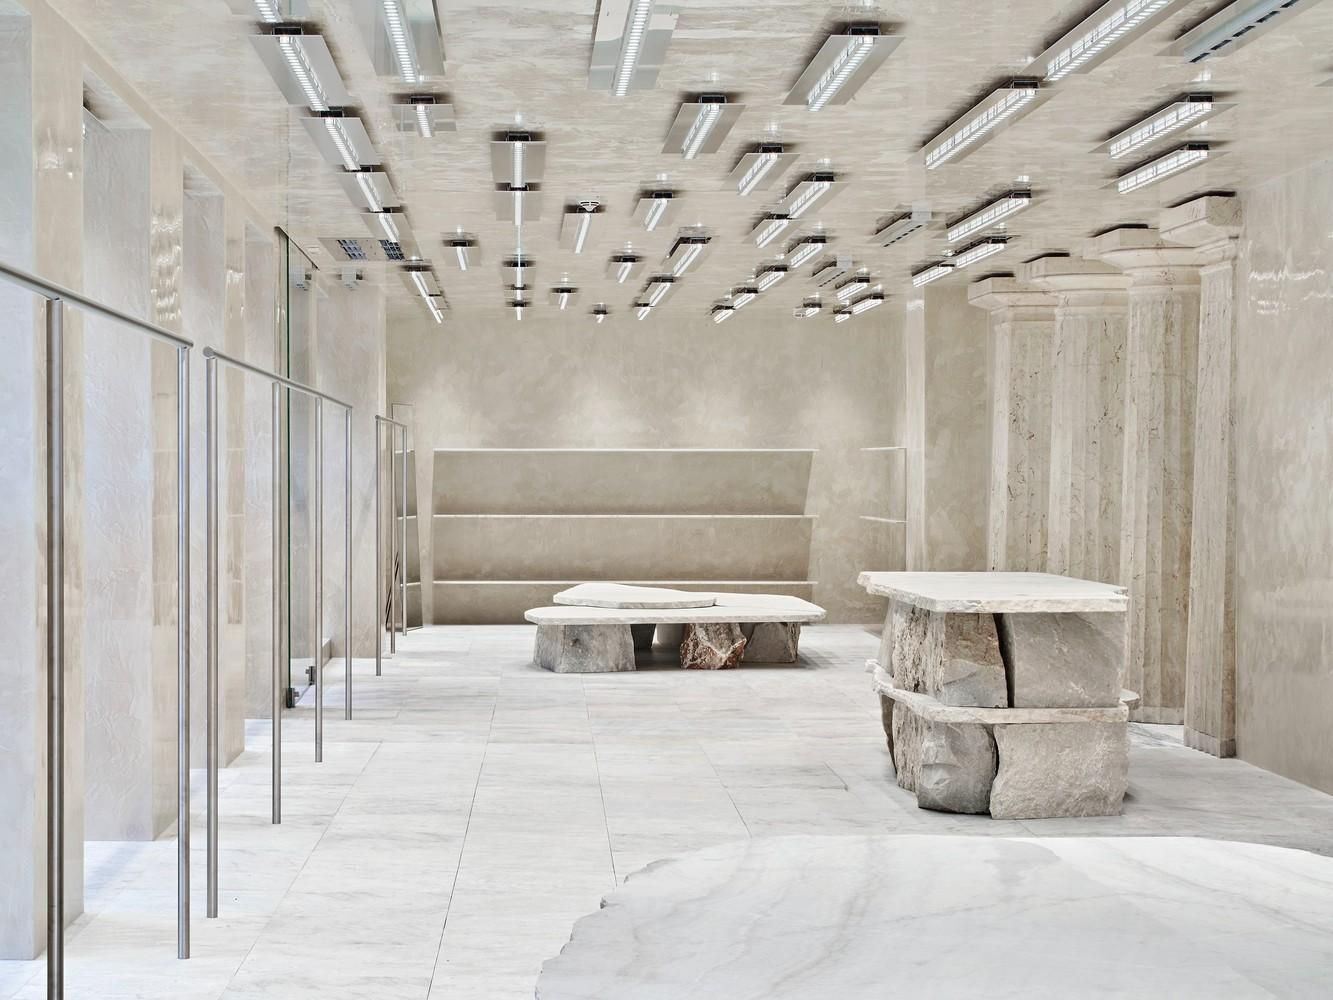 Божественные колоннады и мрамор: интерьер магазина в Стокгольме, что захватывает – фото